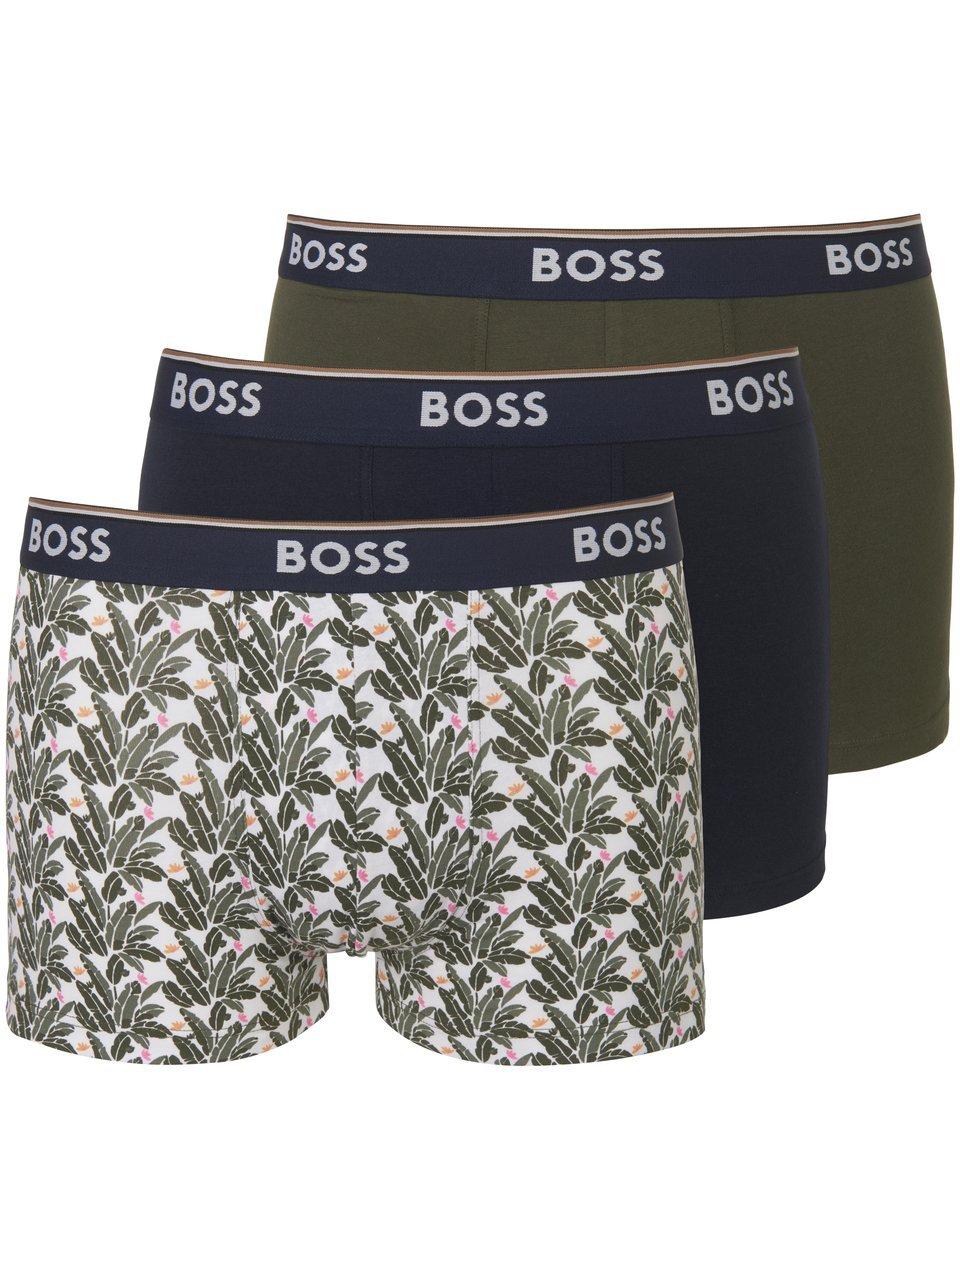 Hugo Boss BOSS power 3P boxer trunks leafs multi - M